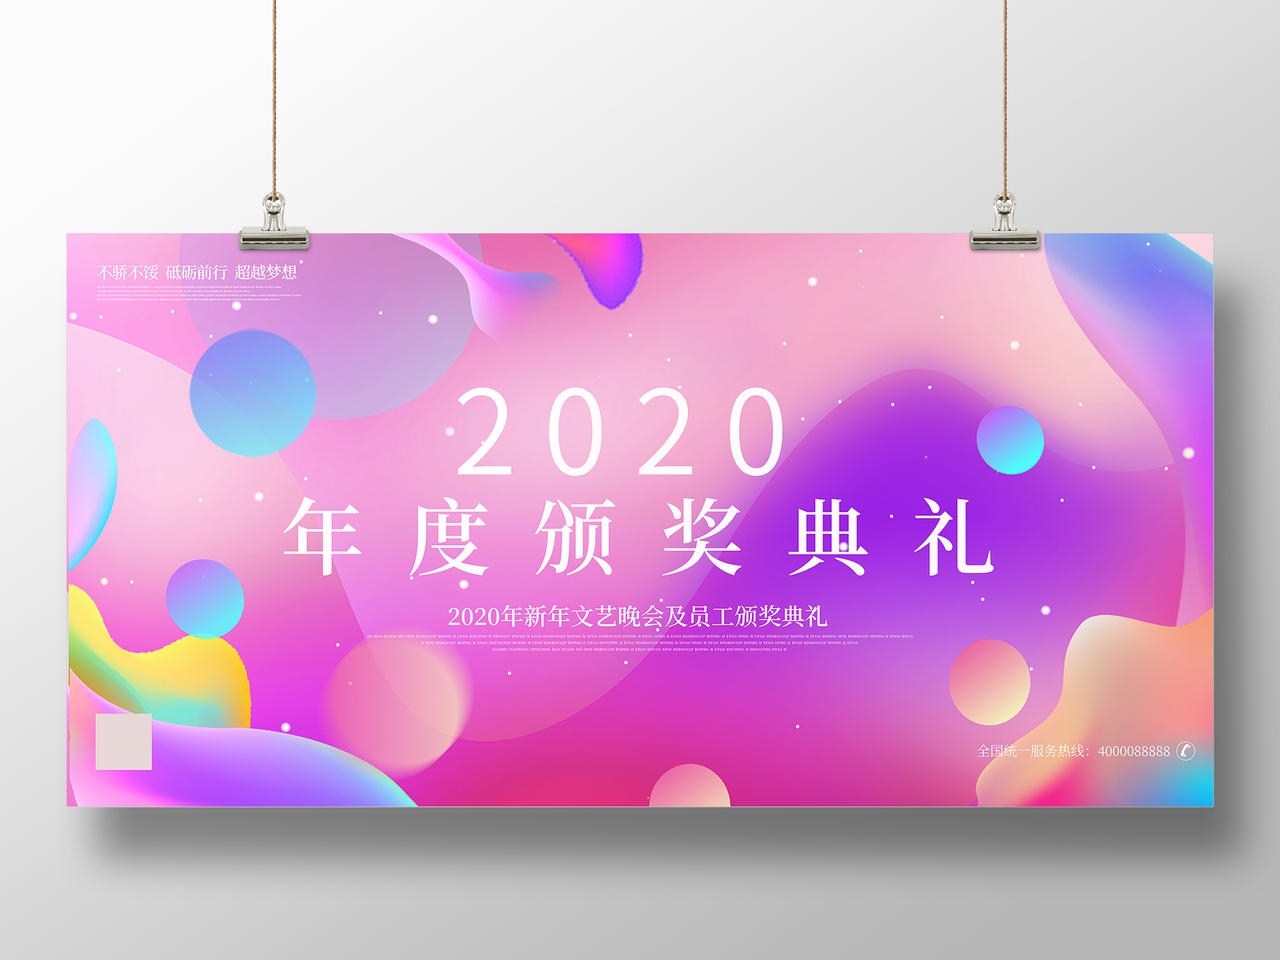 彩色流体炫彩风格颁奖2020年度颁奖典礼新年晚会宣传展板